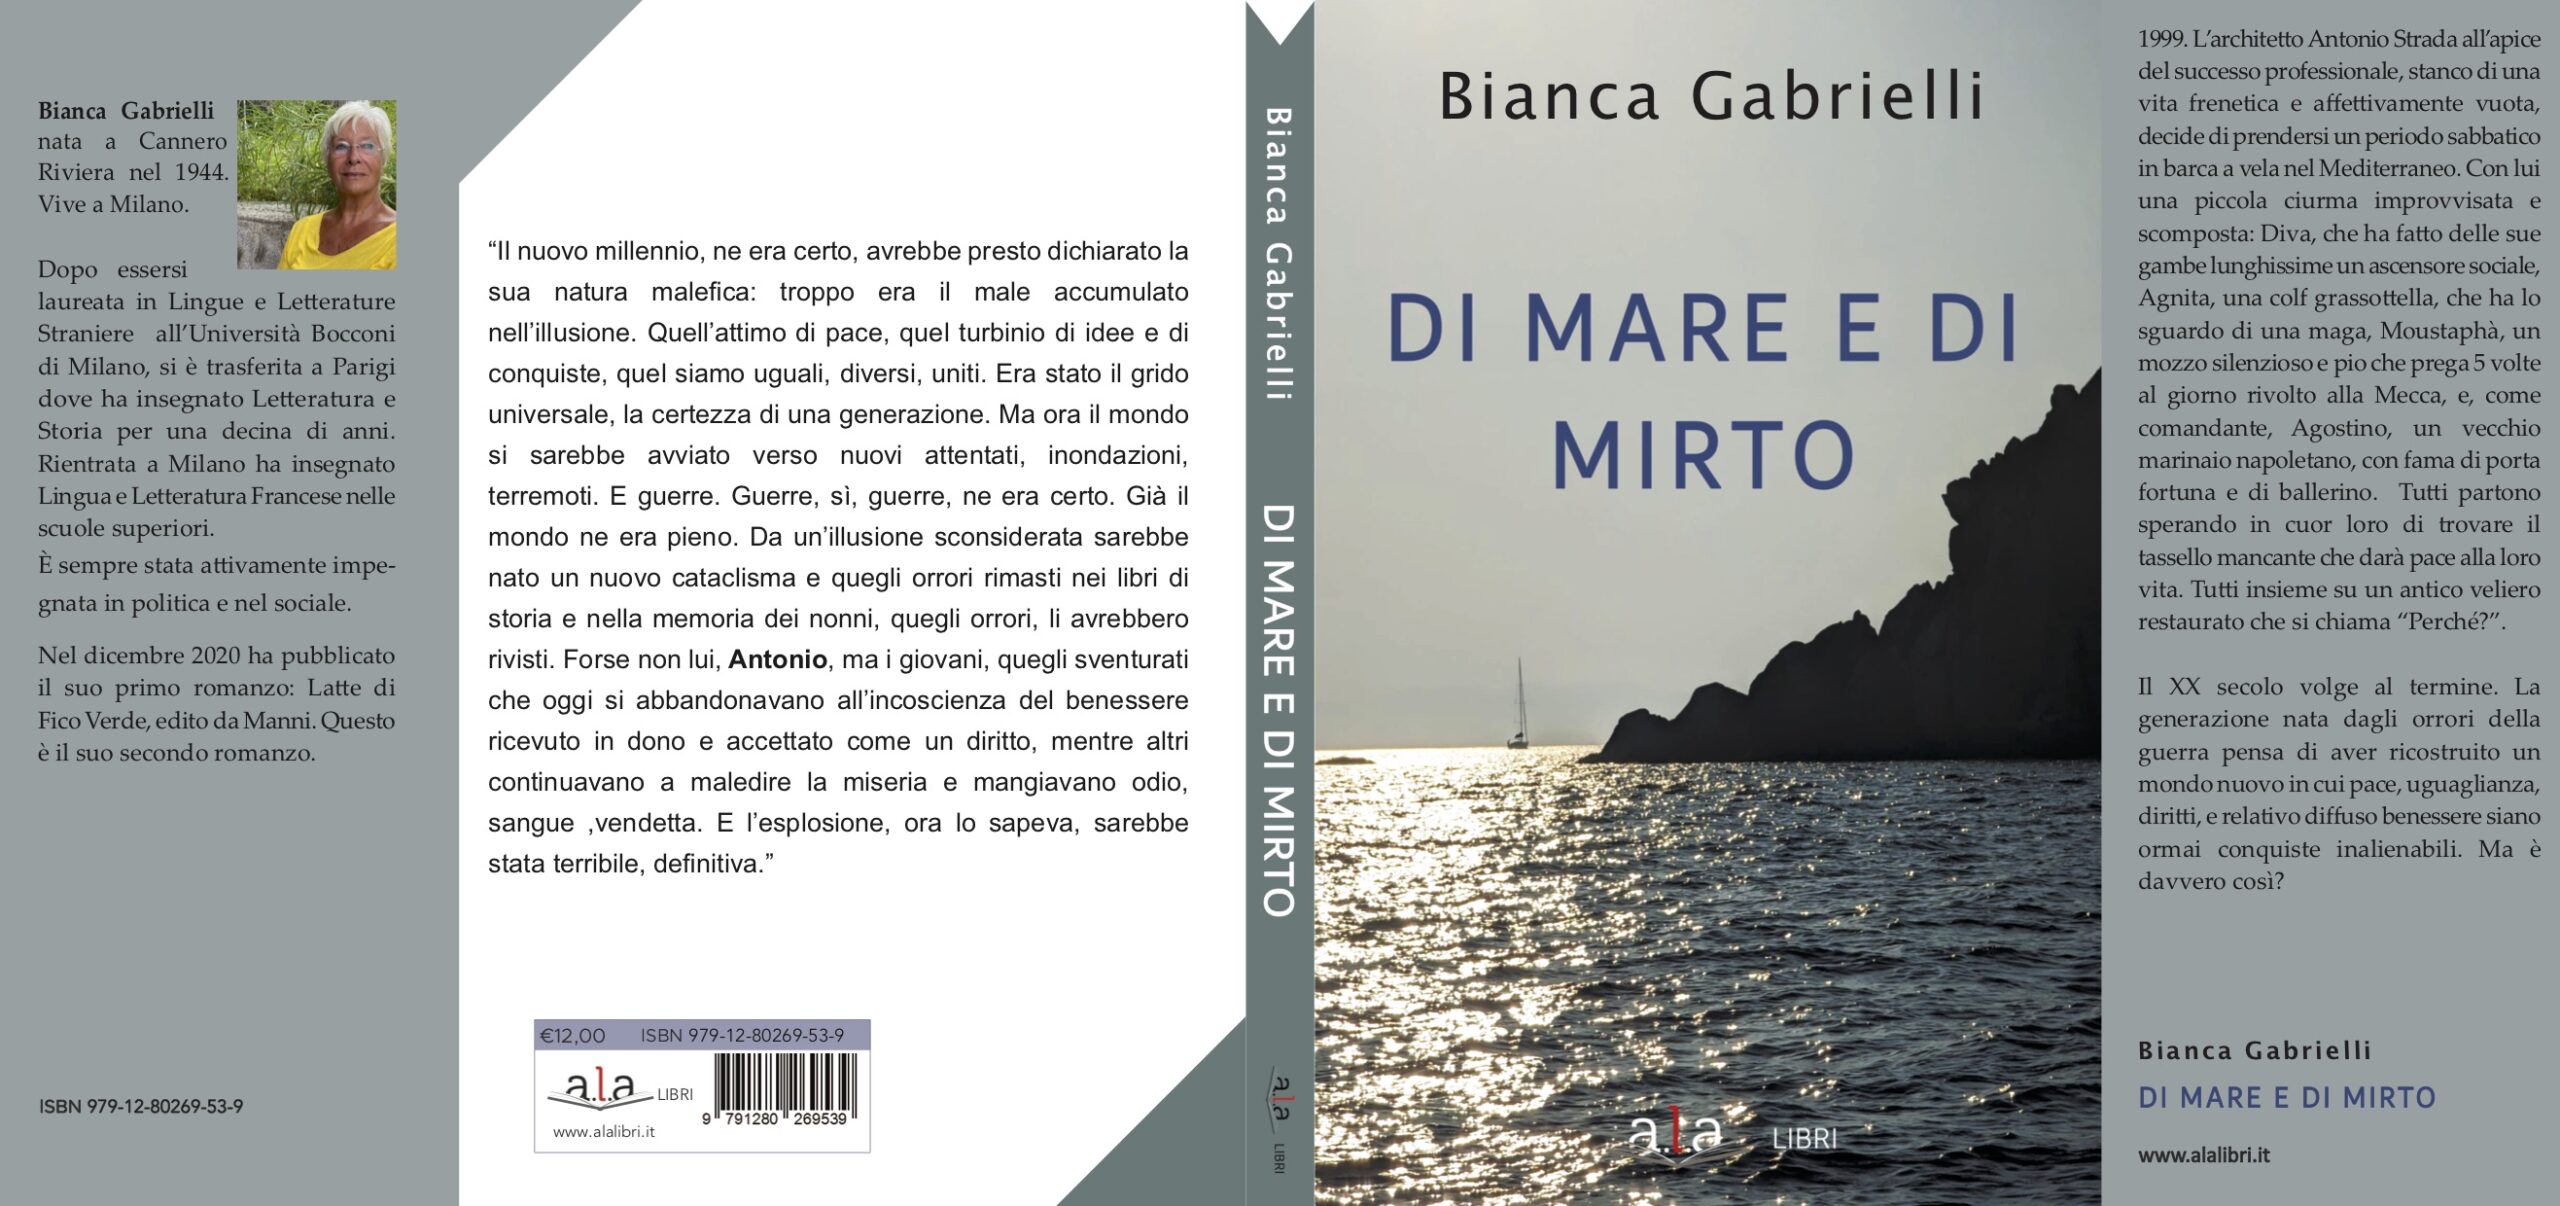 Libro Di mare e di mirto, presentazione con la presenza dell'autrice Bianca Gabrielli